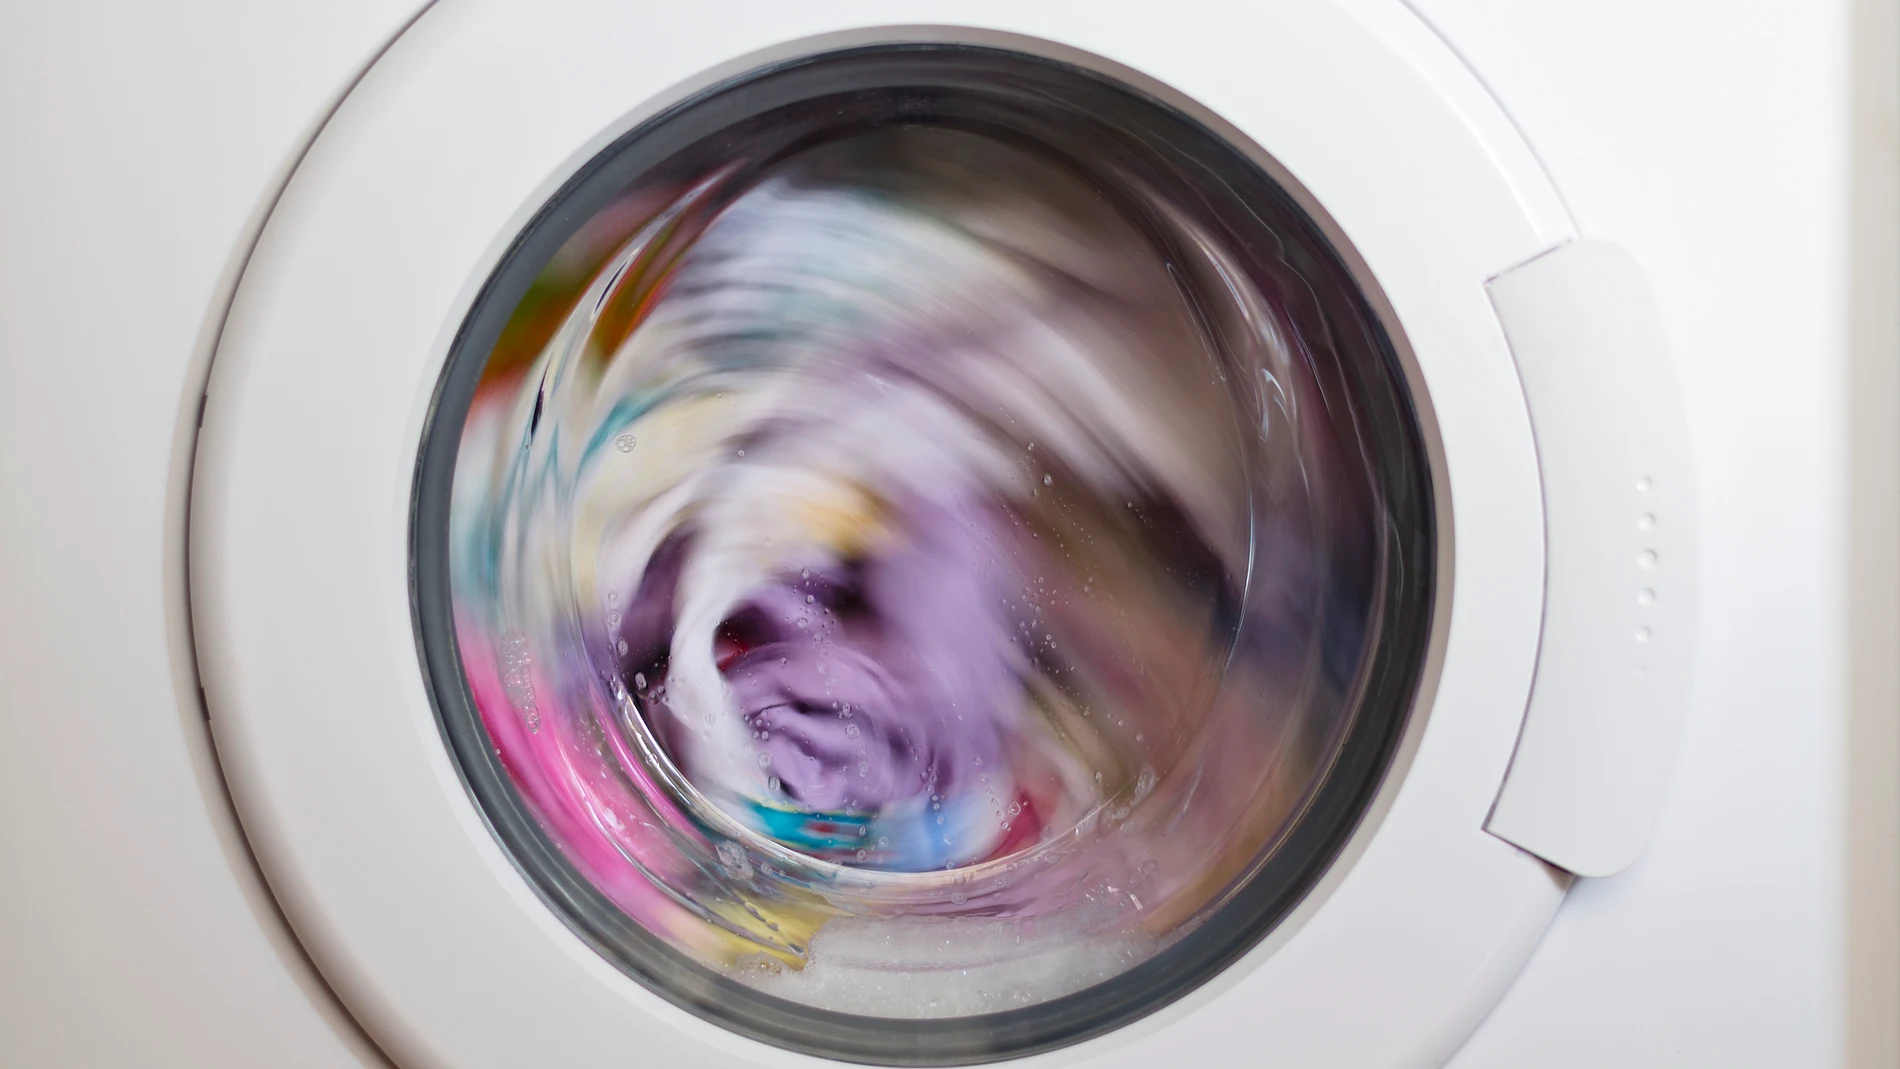 Lavadoras, secadoras y lavavajillas